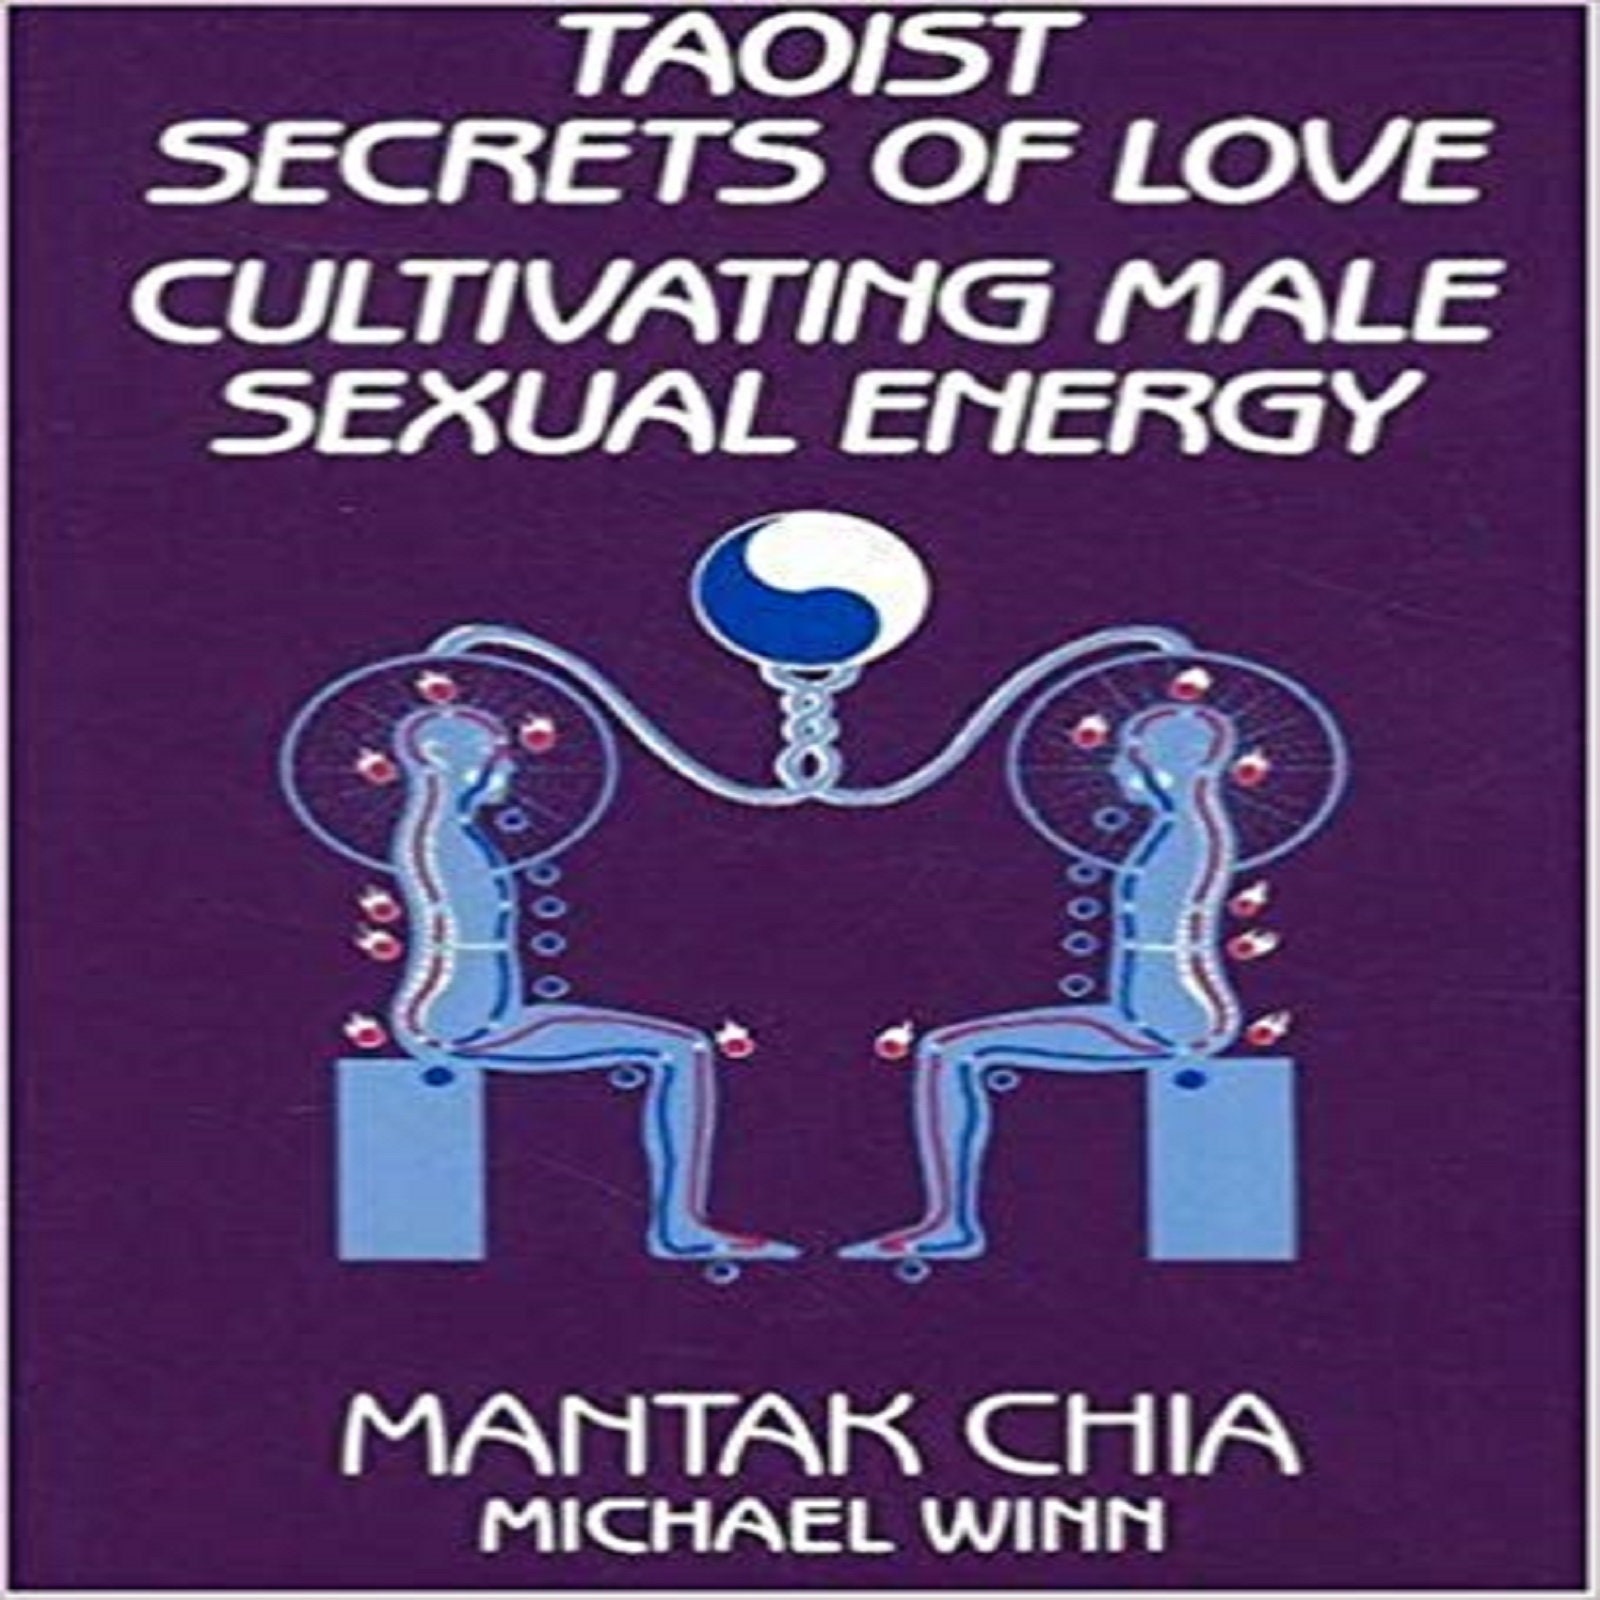 Secretos taoístas del amor: Cultivando la energía sexual Etsy